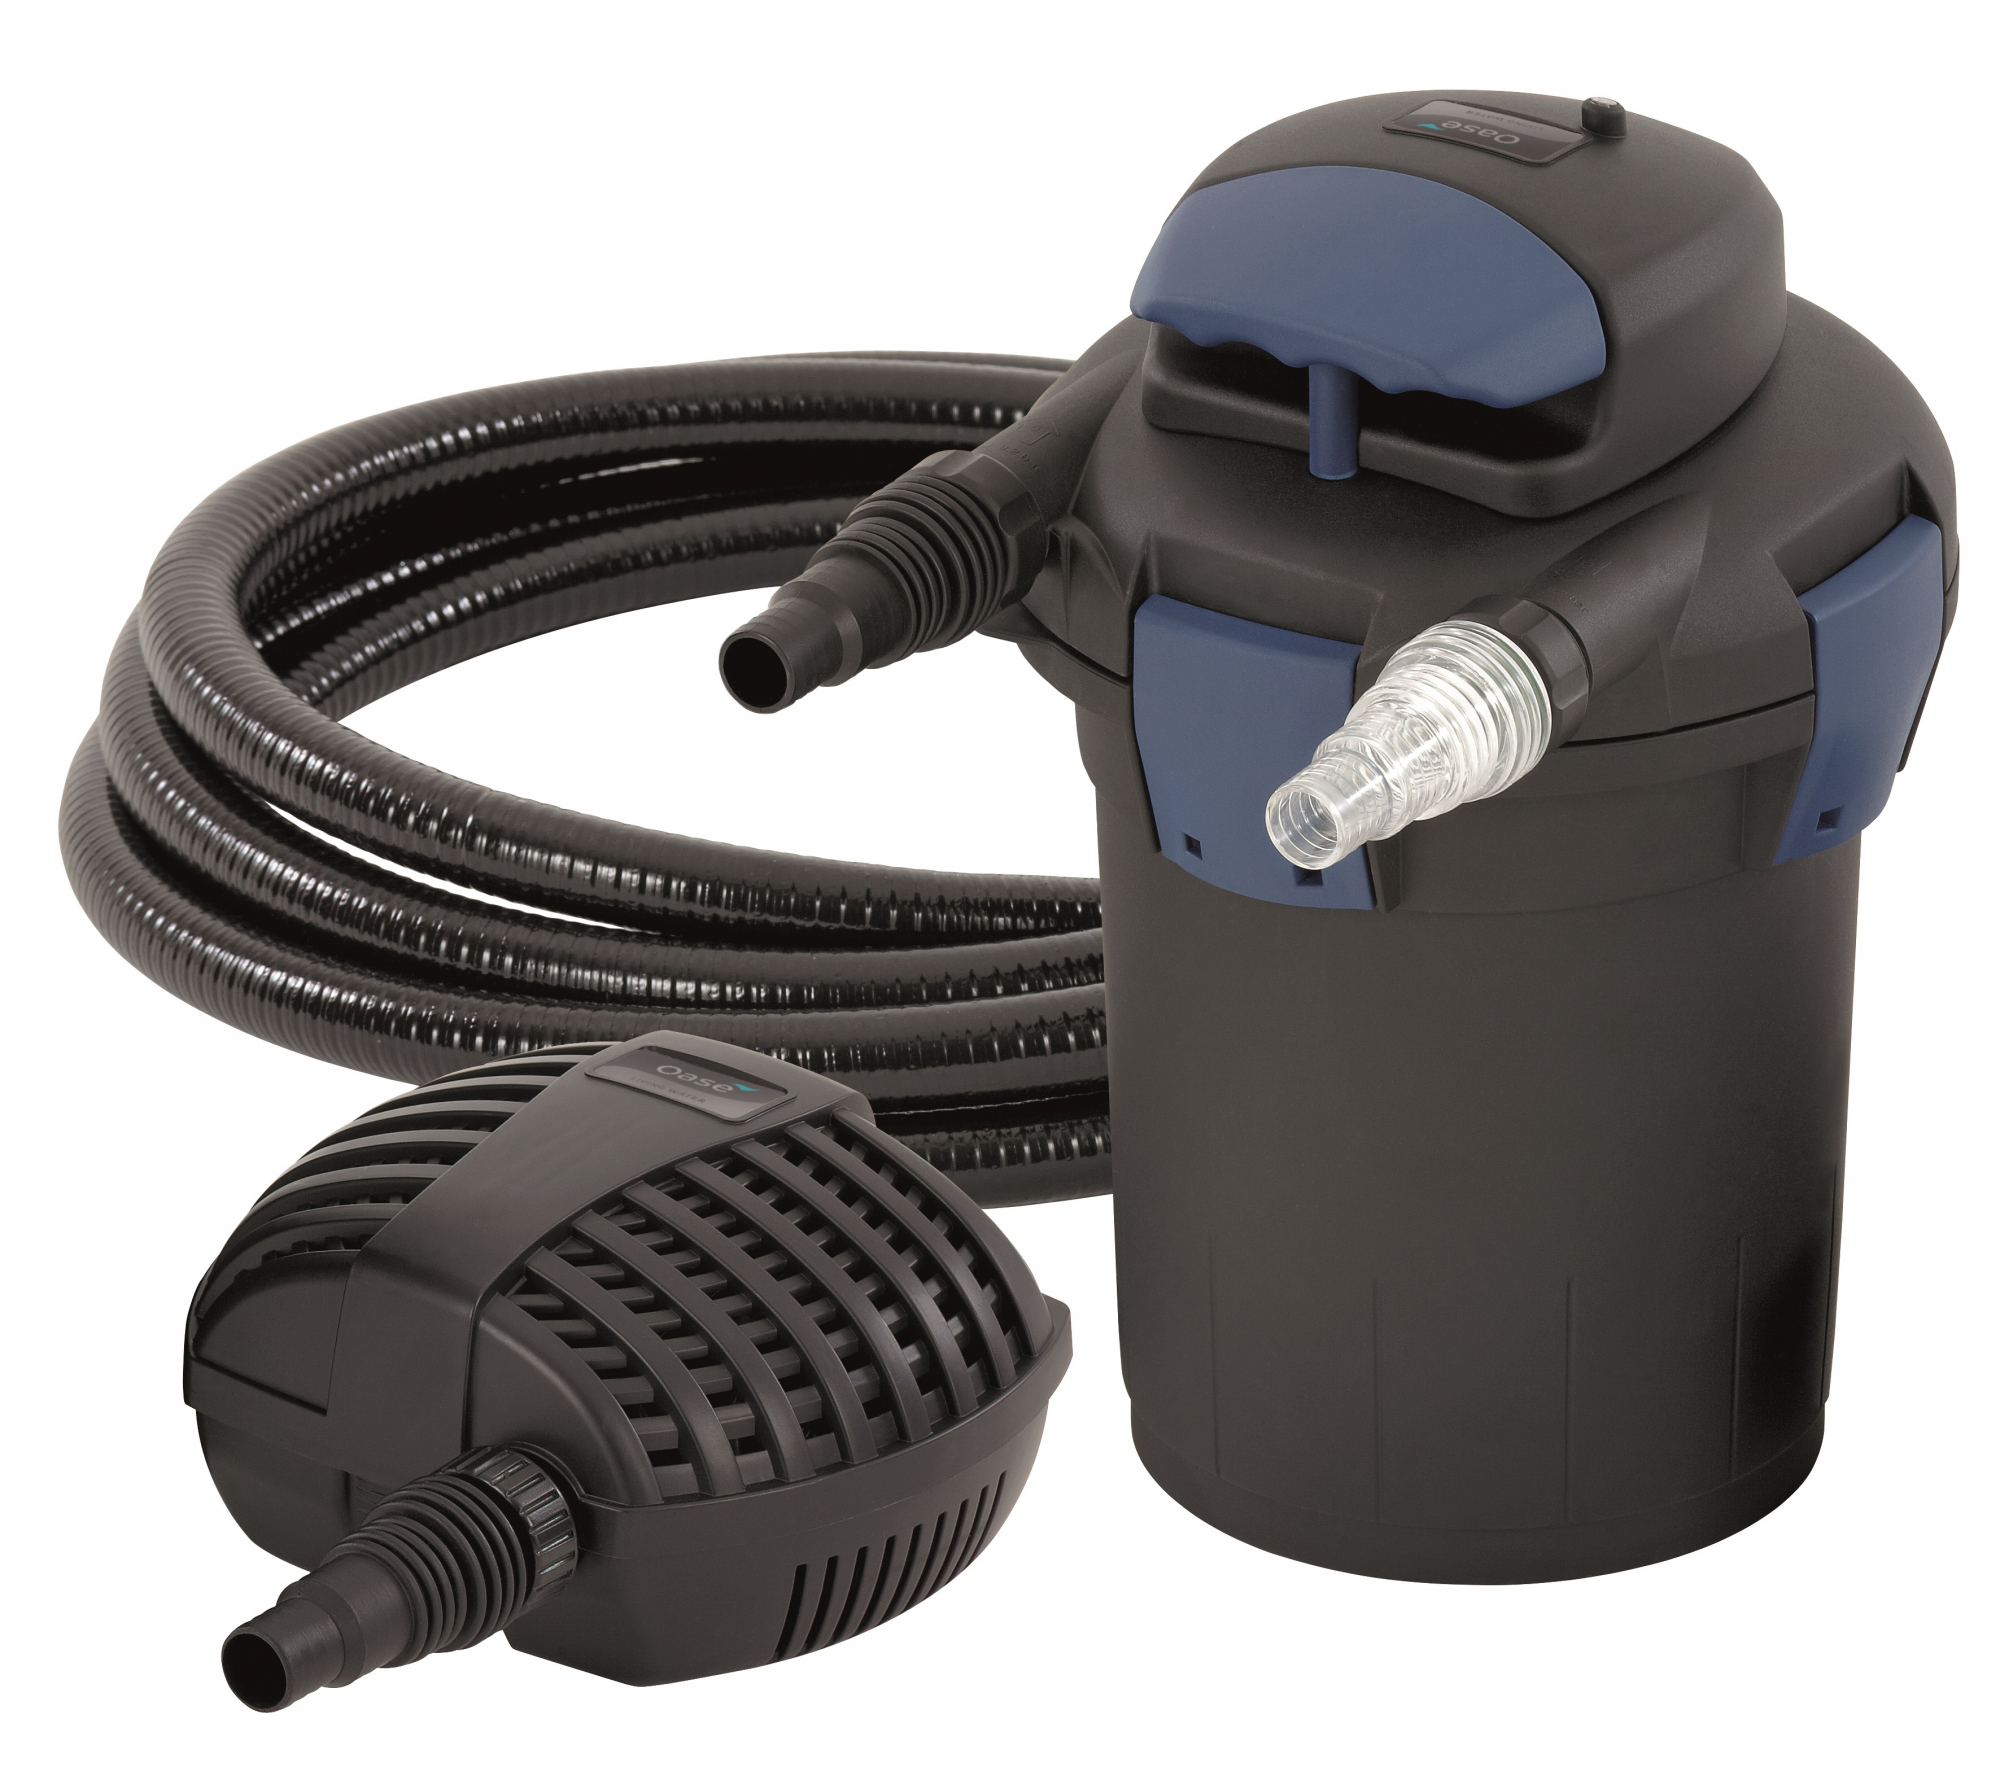 Filtre pour bassin OASE BioPress Set 4000 avec pompe et filtre UVC intégré 